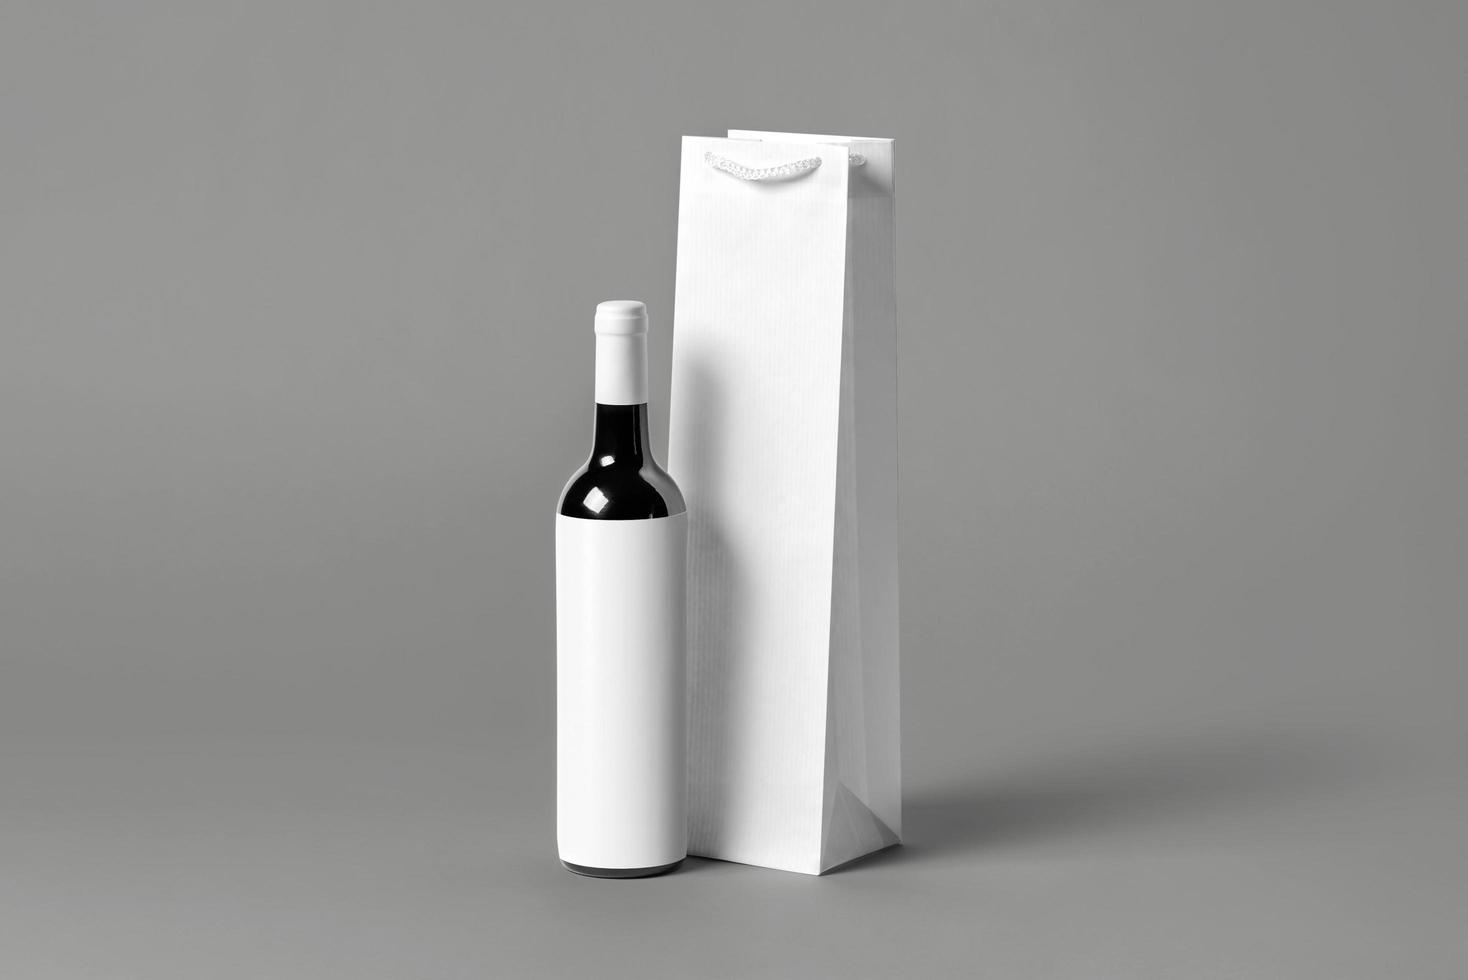 tom lång vit vinflaska väska mockup set, isolerade, 3D-rendering. tom handväska för vin eller vodka mock up. genomskinlig pappersförpackning som passar för butiksmärkning. foto